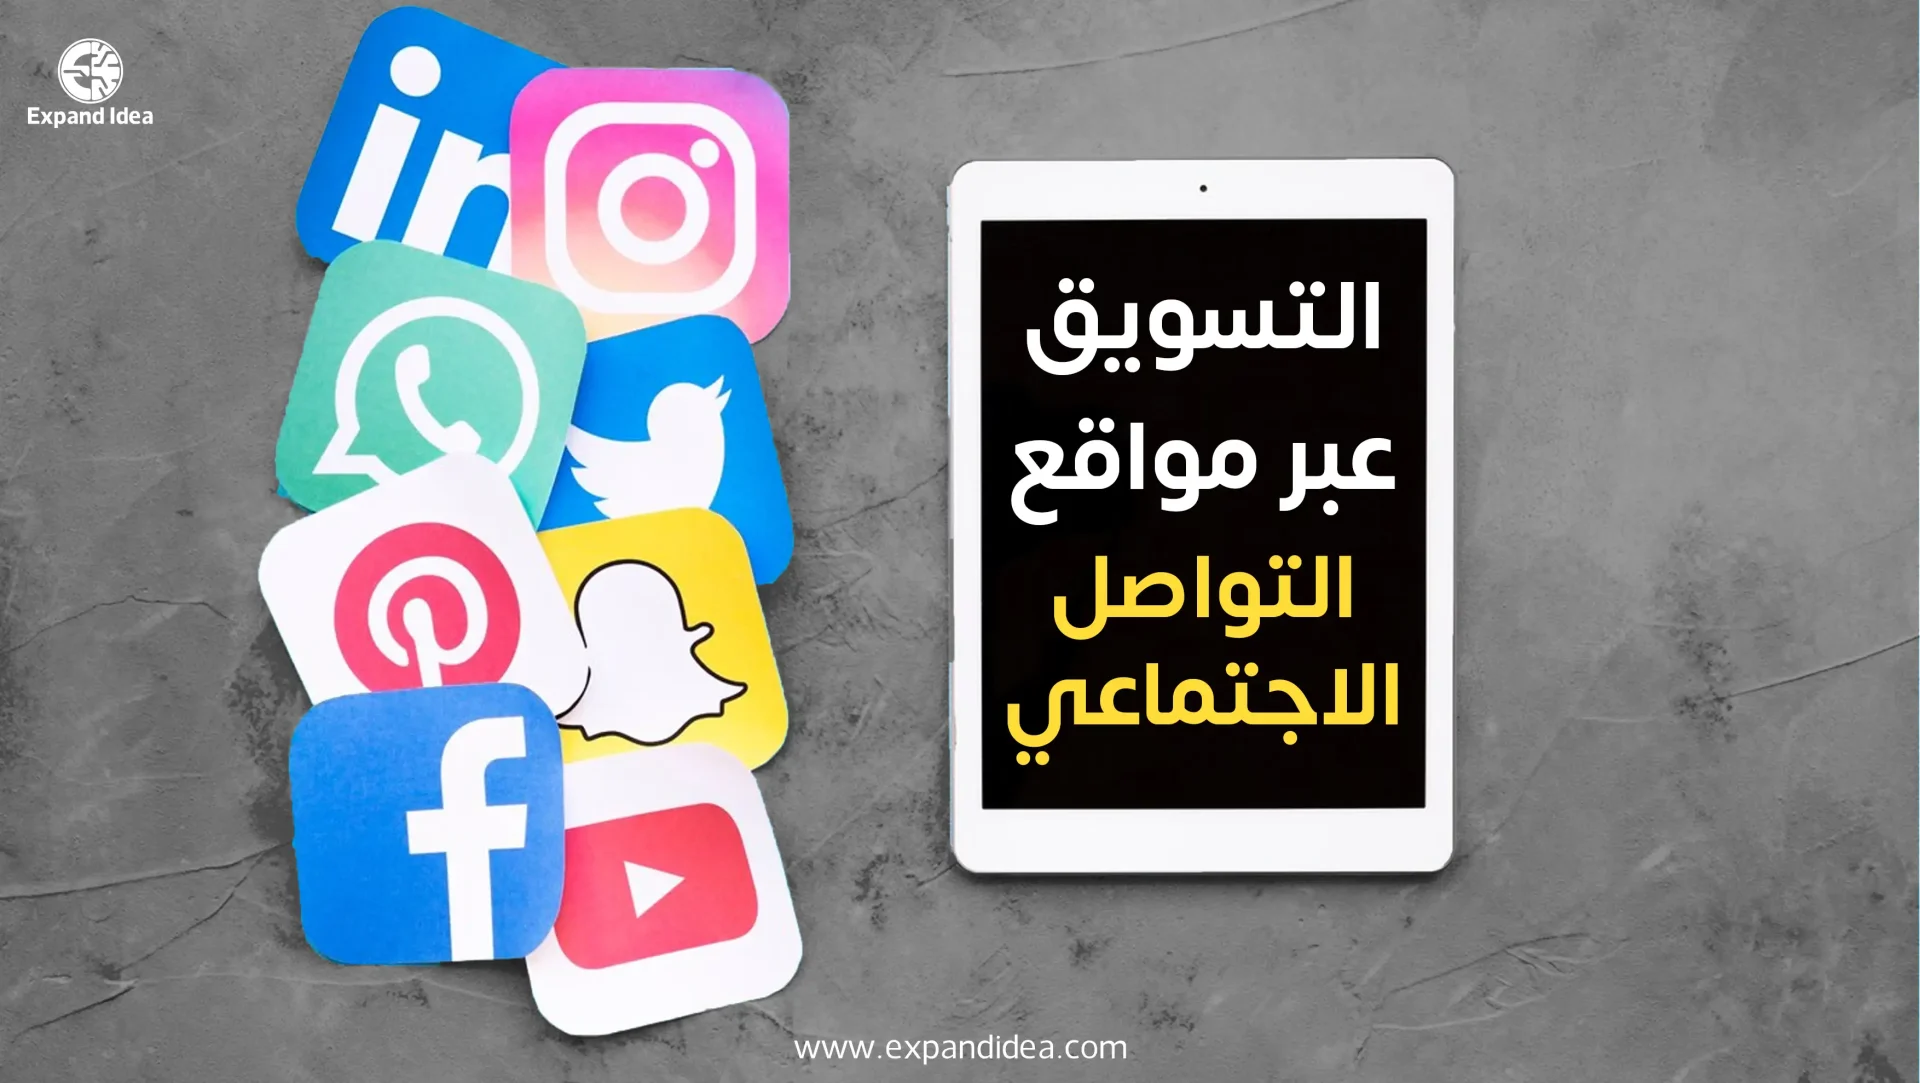 التسويق عبر وسائل التواصل الاجتماعي المختلفة